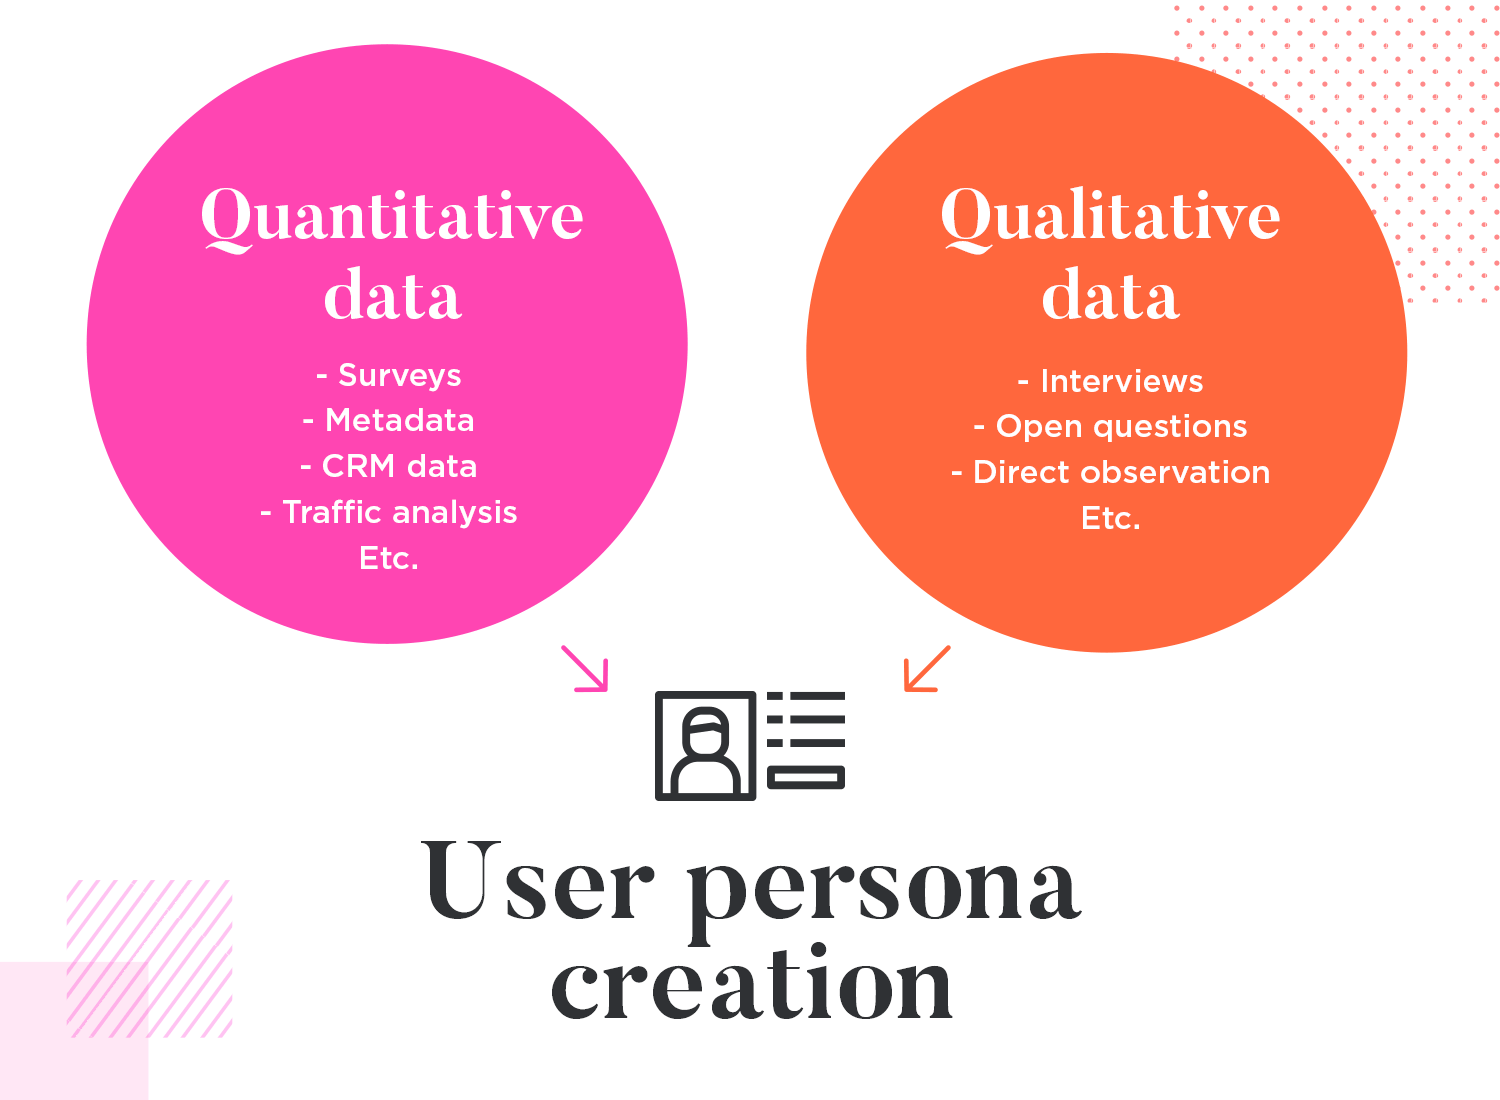 User personas use quantitative and qualitative data